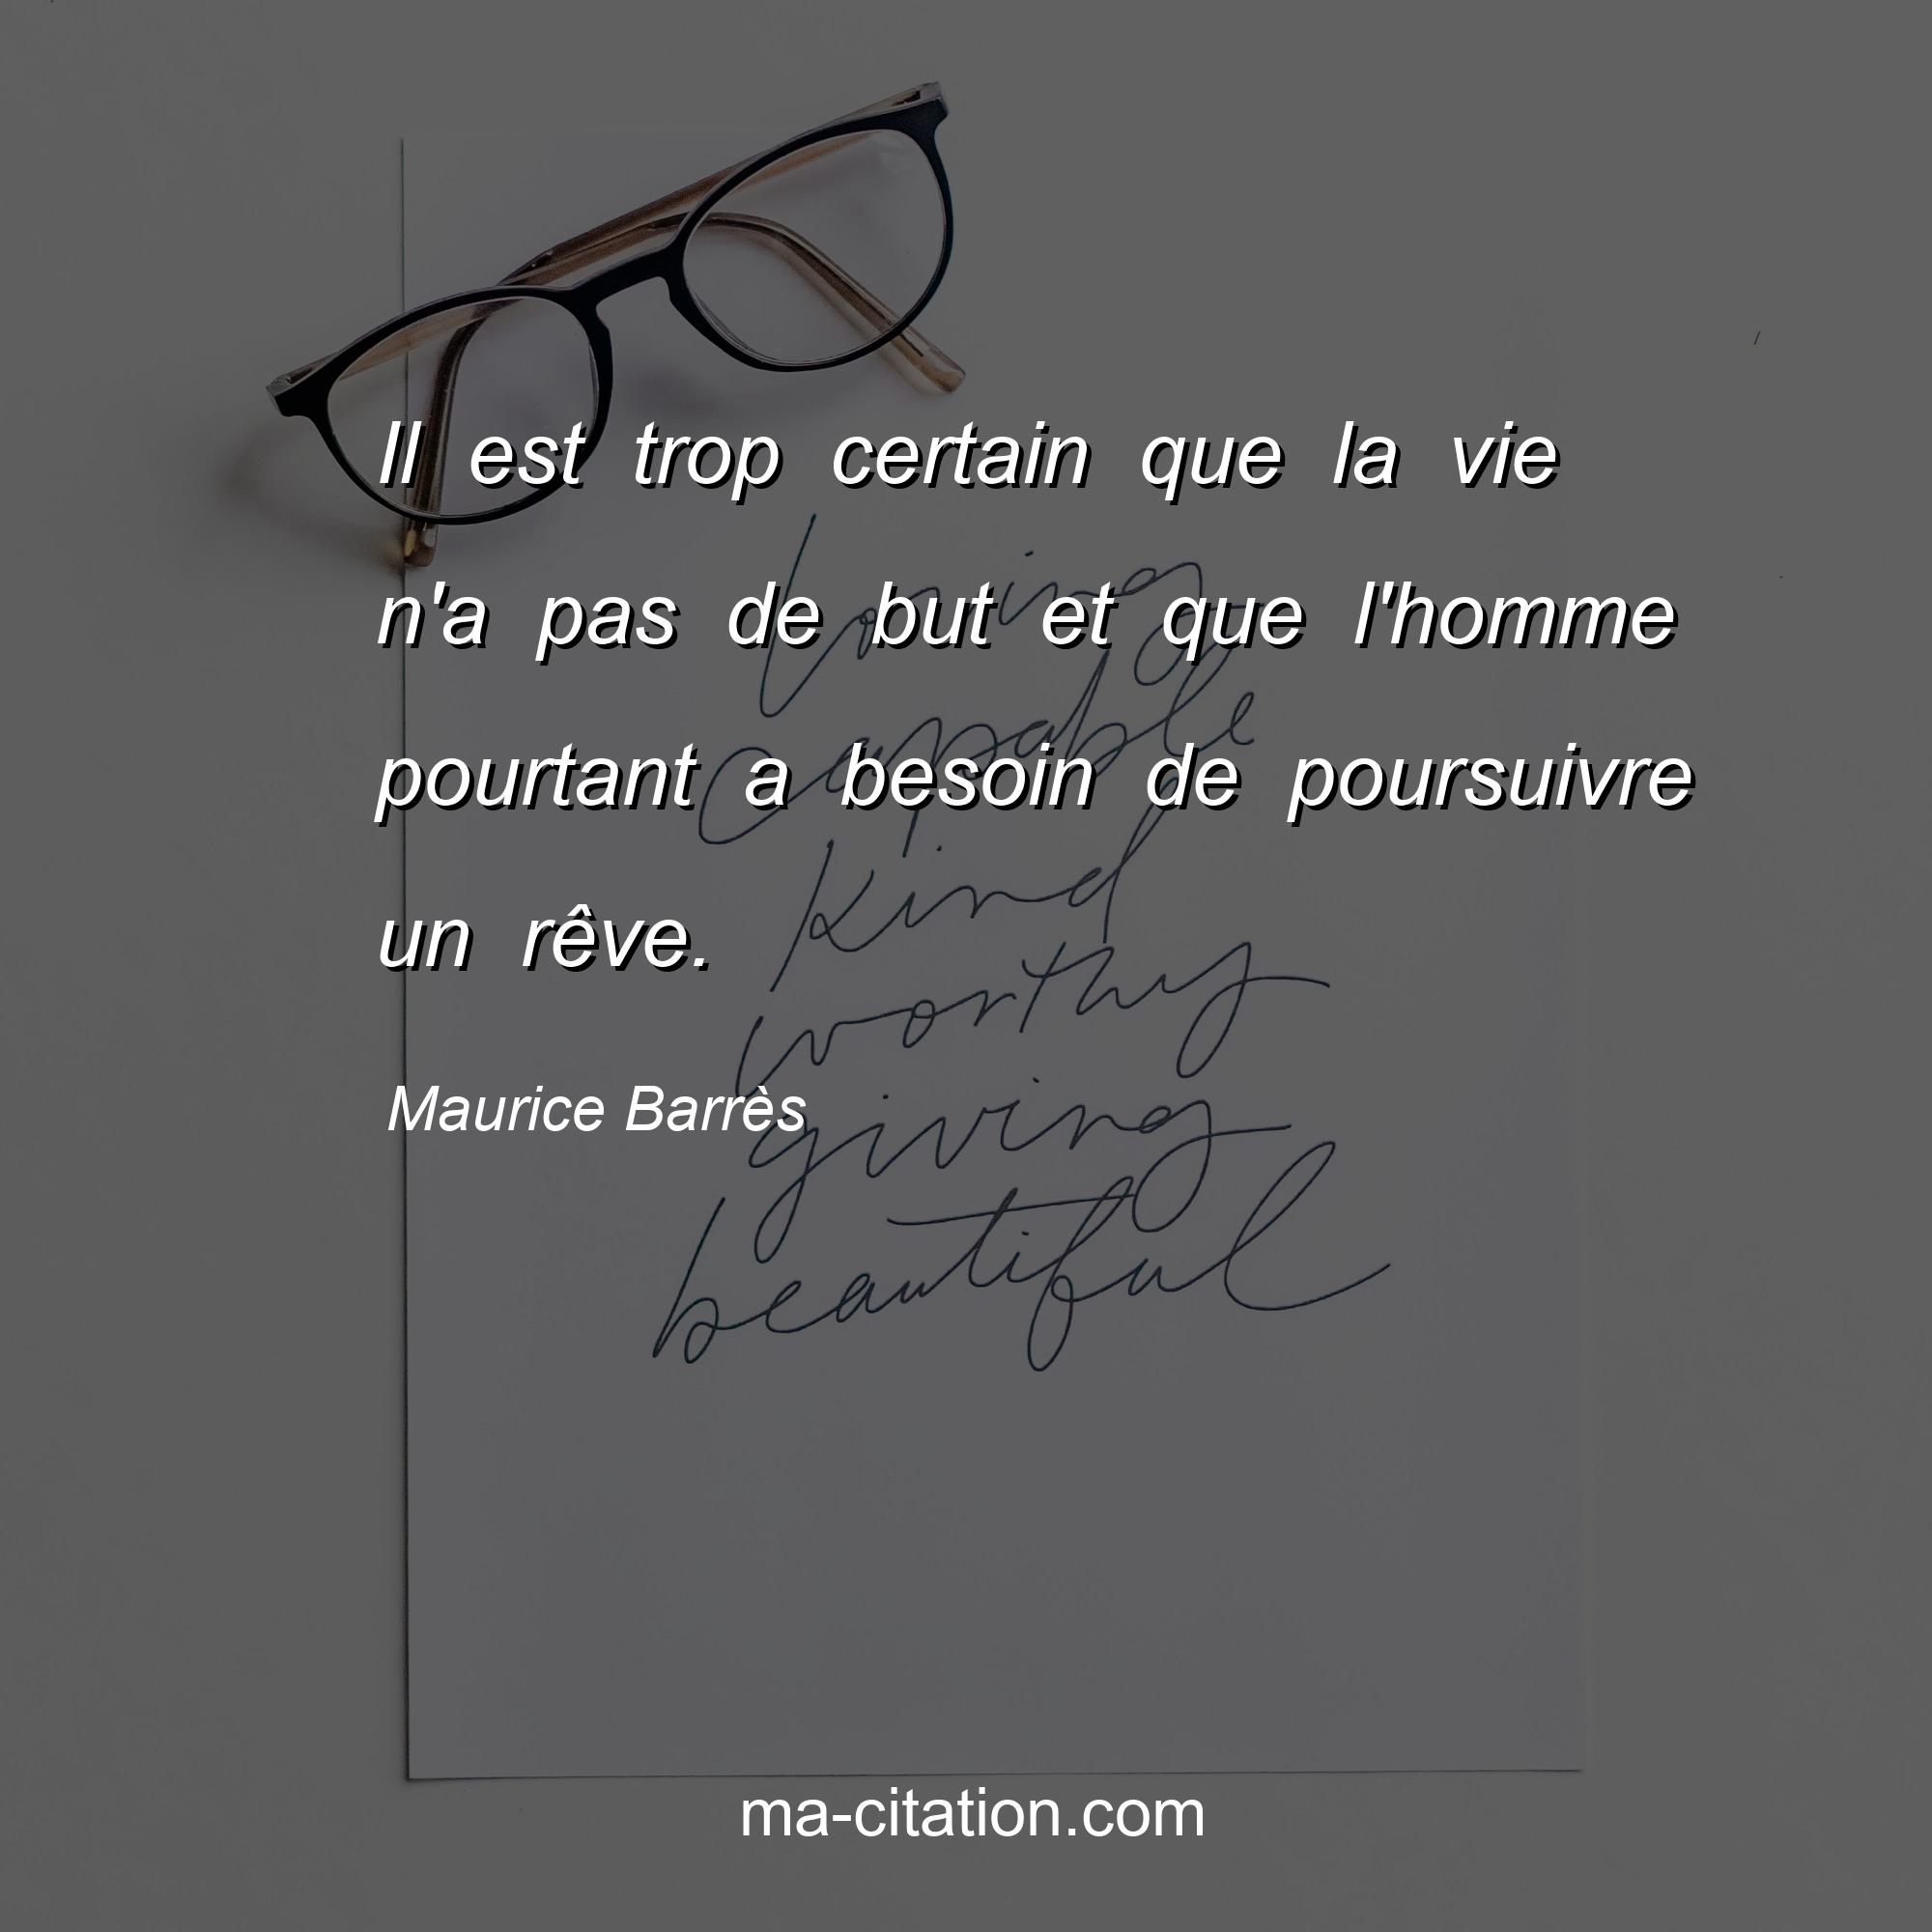 Maurice Barrès : Il est trop certain que la vie n'a pas de but et que l'homme pourtant a besoin de poursuivre un rêve.